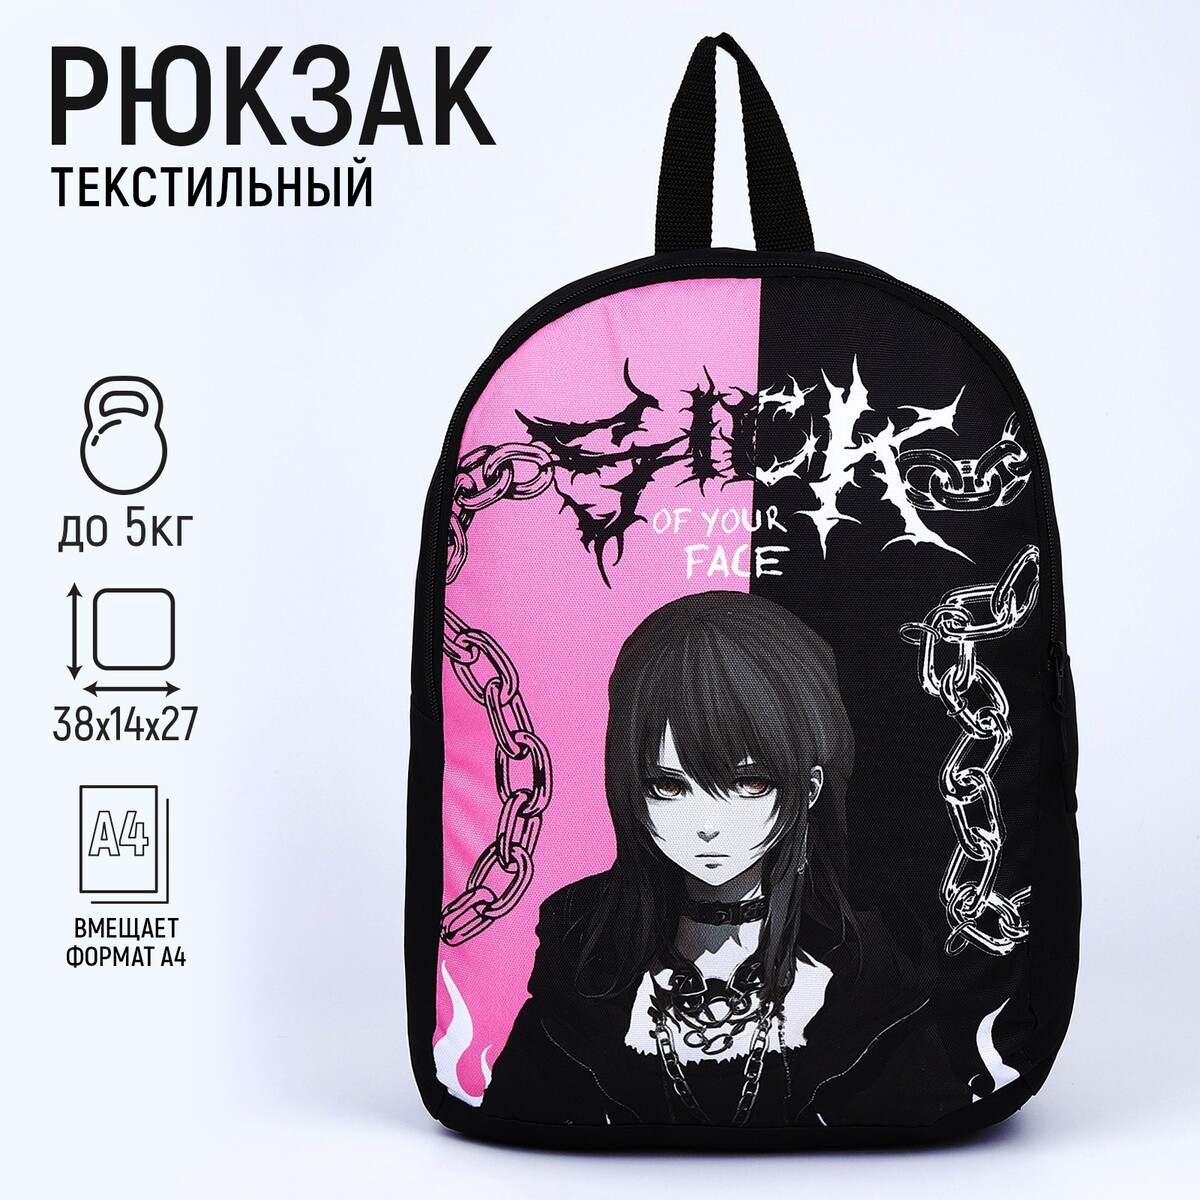 Рюкзак текстильный аниме, 38х14х27 см, цвет черный, розовый рюкзак аниме с тачкой 40 27 12см 1отд